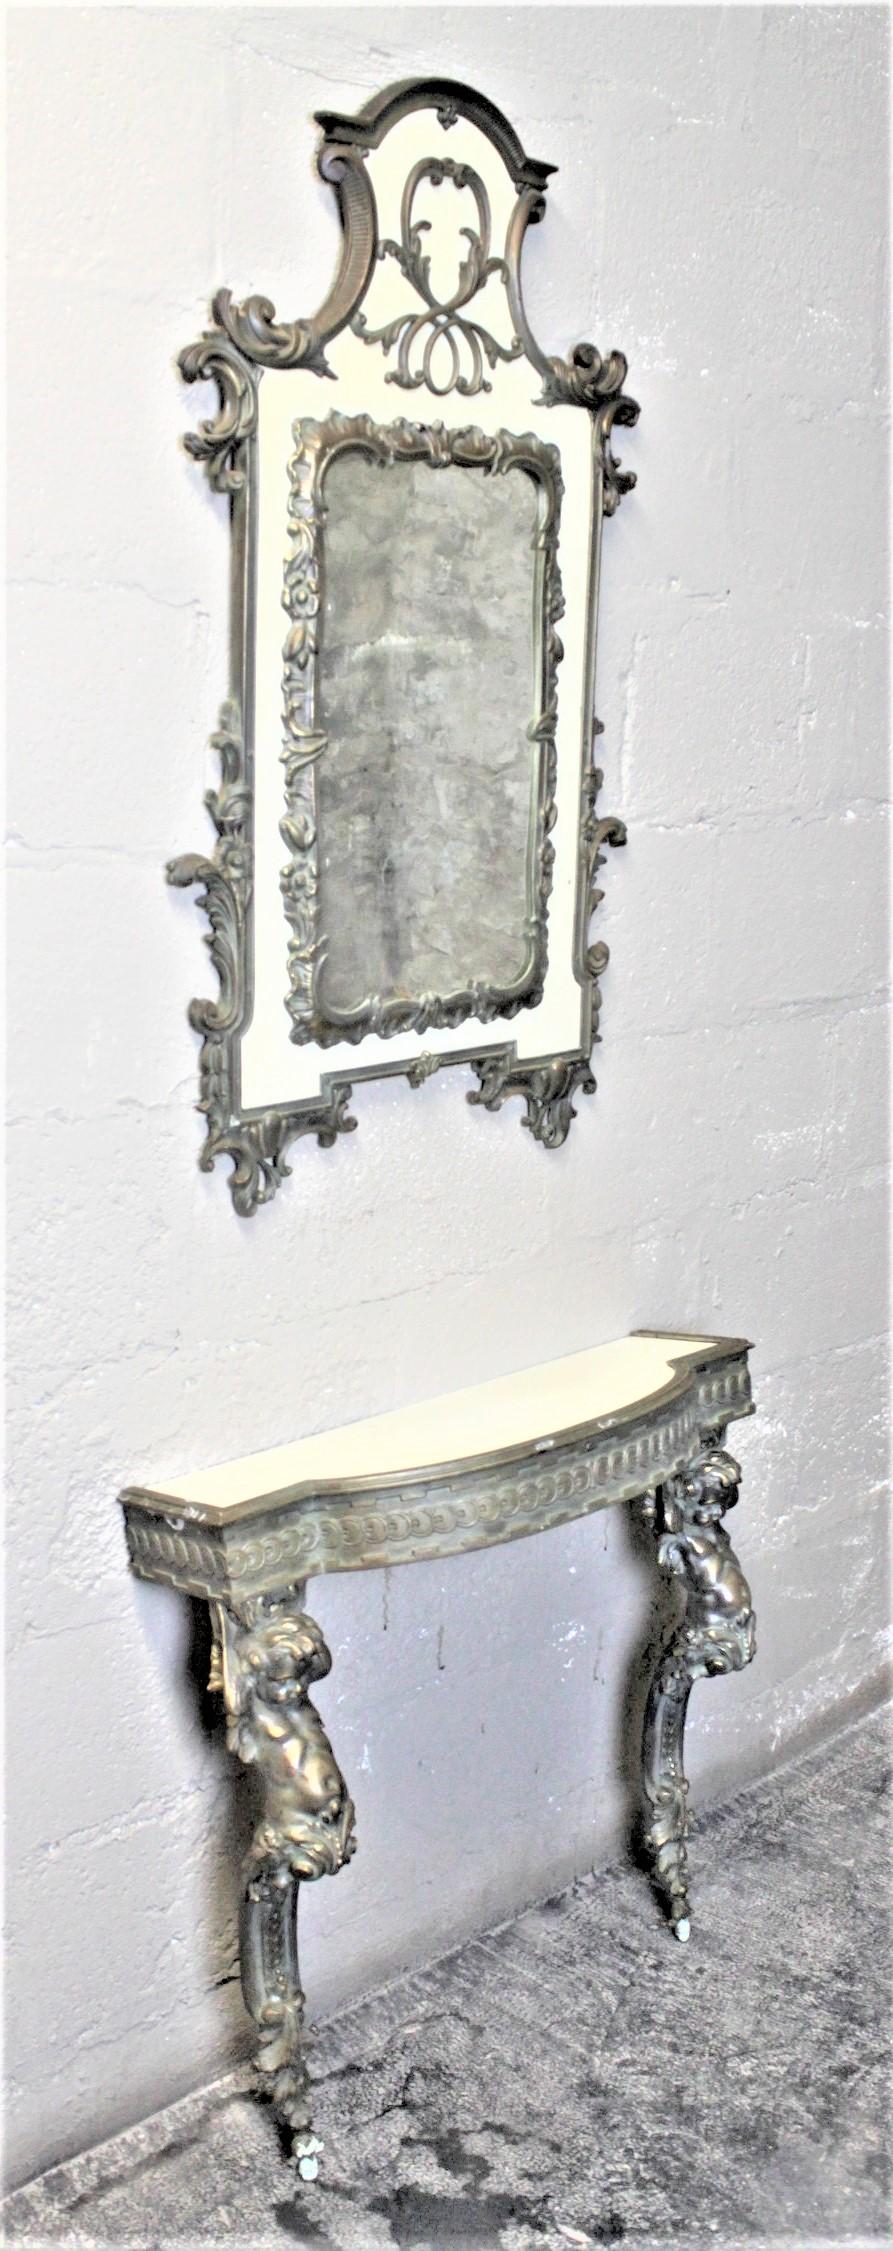 Dieser Vintage-Konsolentisch und der Spiegel sind unsigniert, wurden aber vermutlich um 1955 in den Vereinigten Staaten im Stil der französischen Renaissance hergestellt. Die Basis des Tisches und des Spiegels besteht aus einer dicken